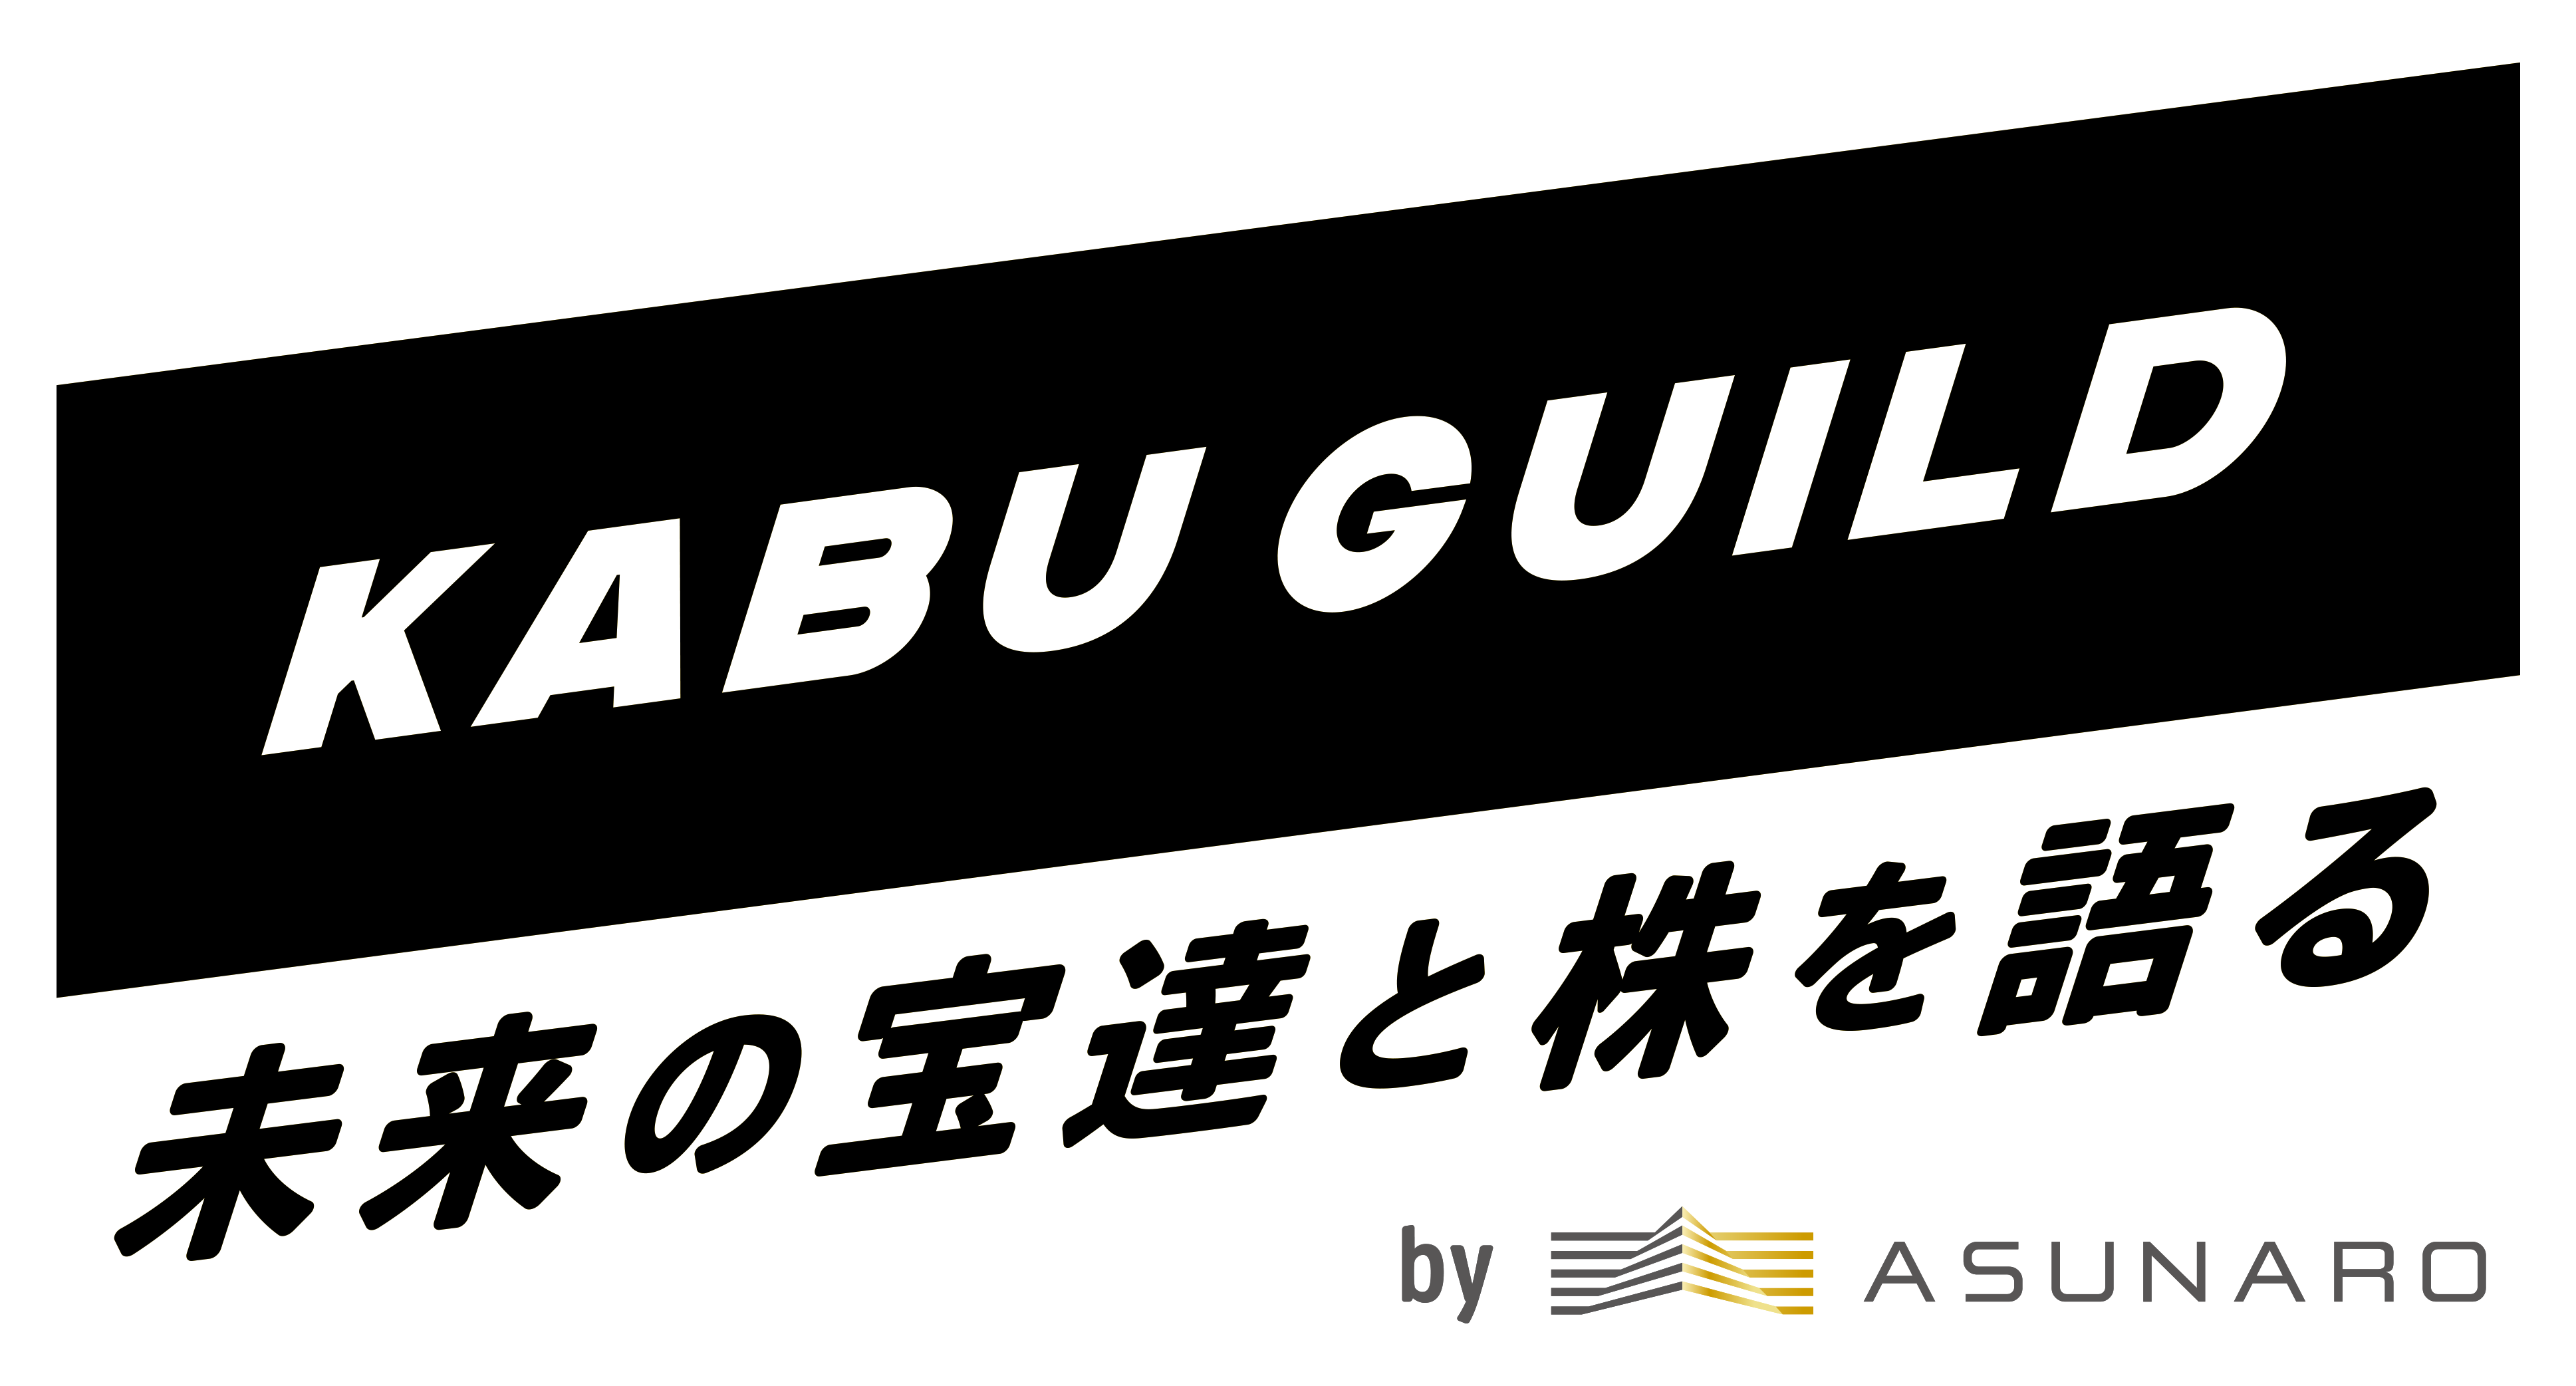 【株式投資教育KABUGUILD】最新動画更新のおしらせ